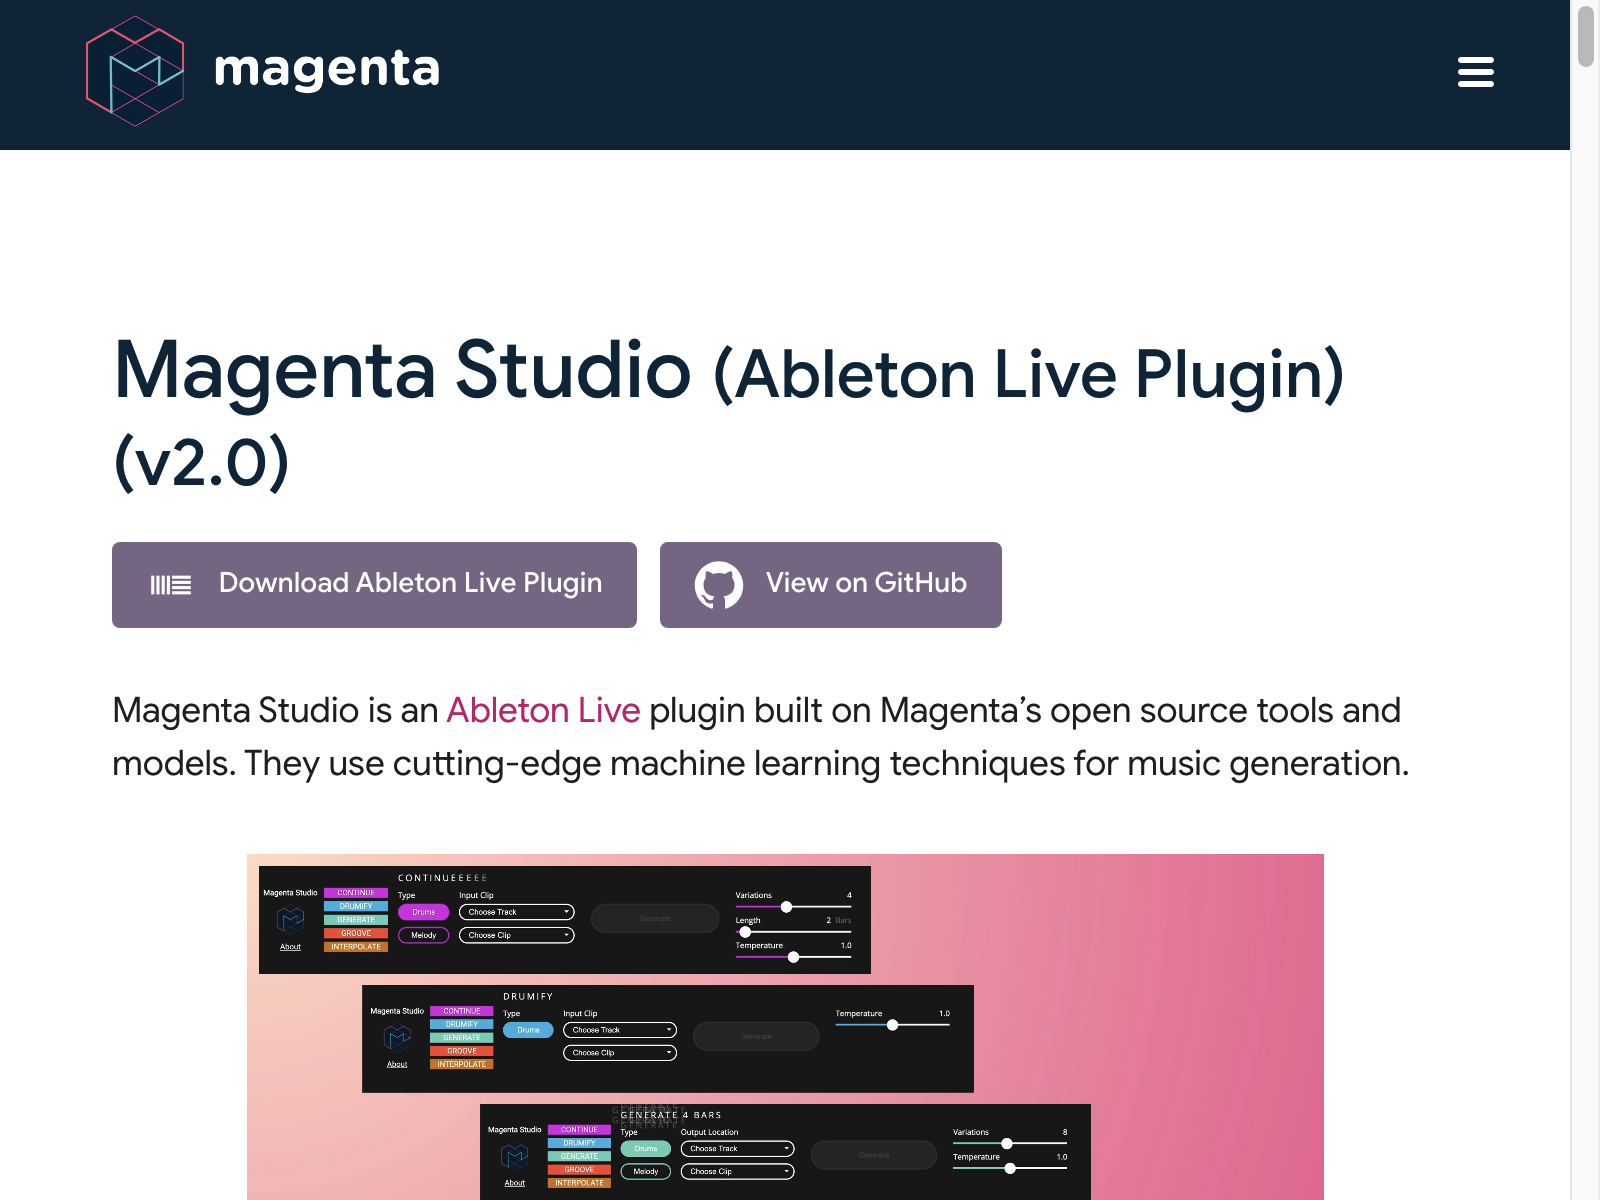 googles magenta studio Review: Pros, Cons, Alternatives